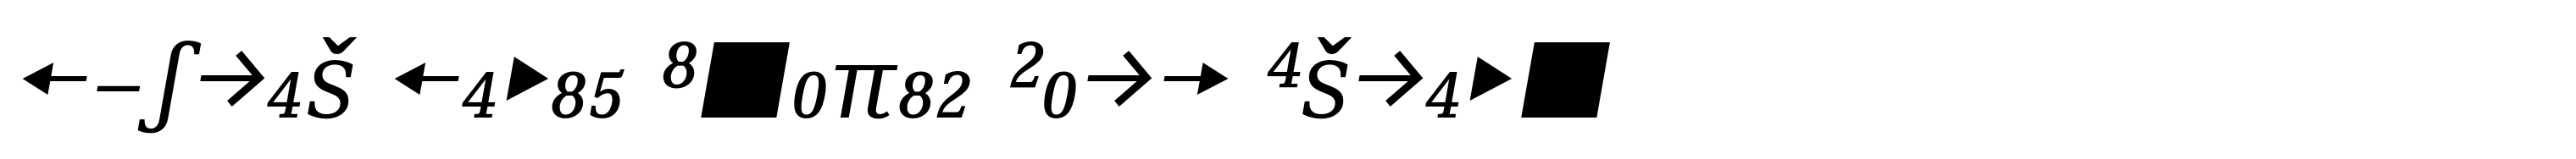 Skopex Serif Italic Caps Expert